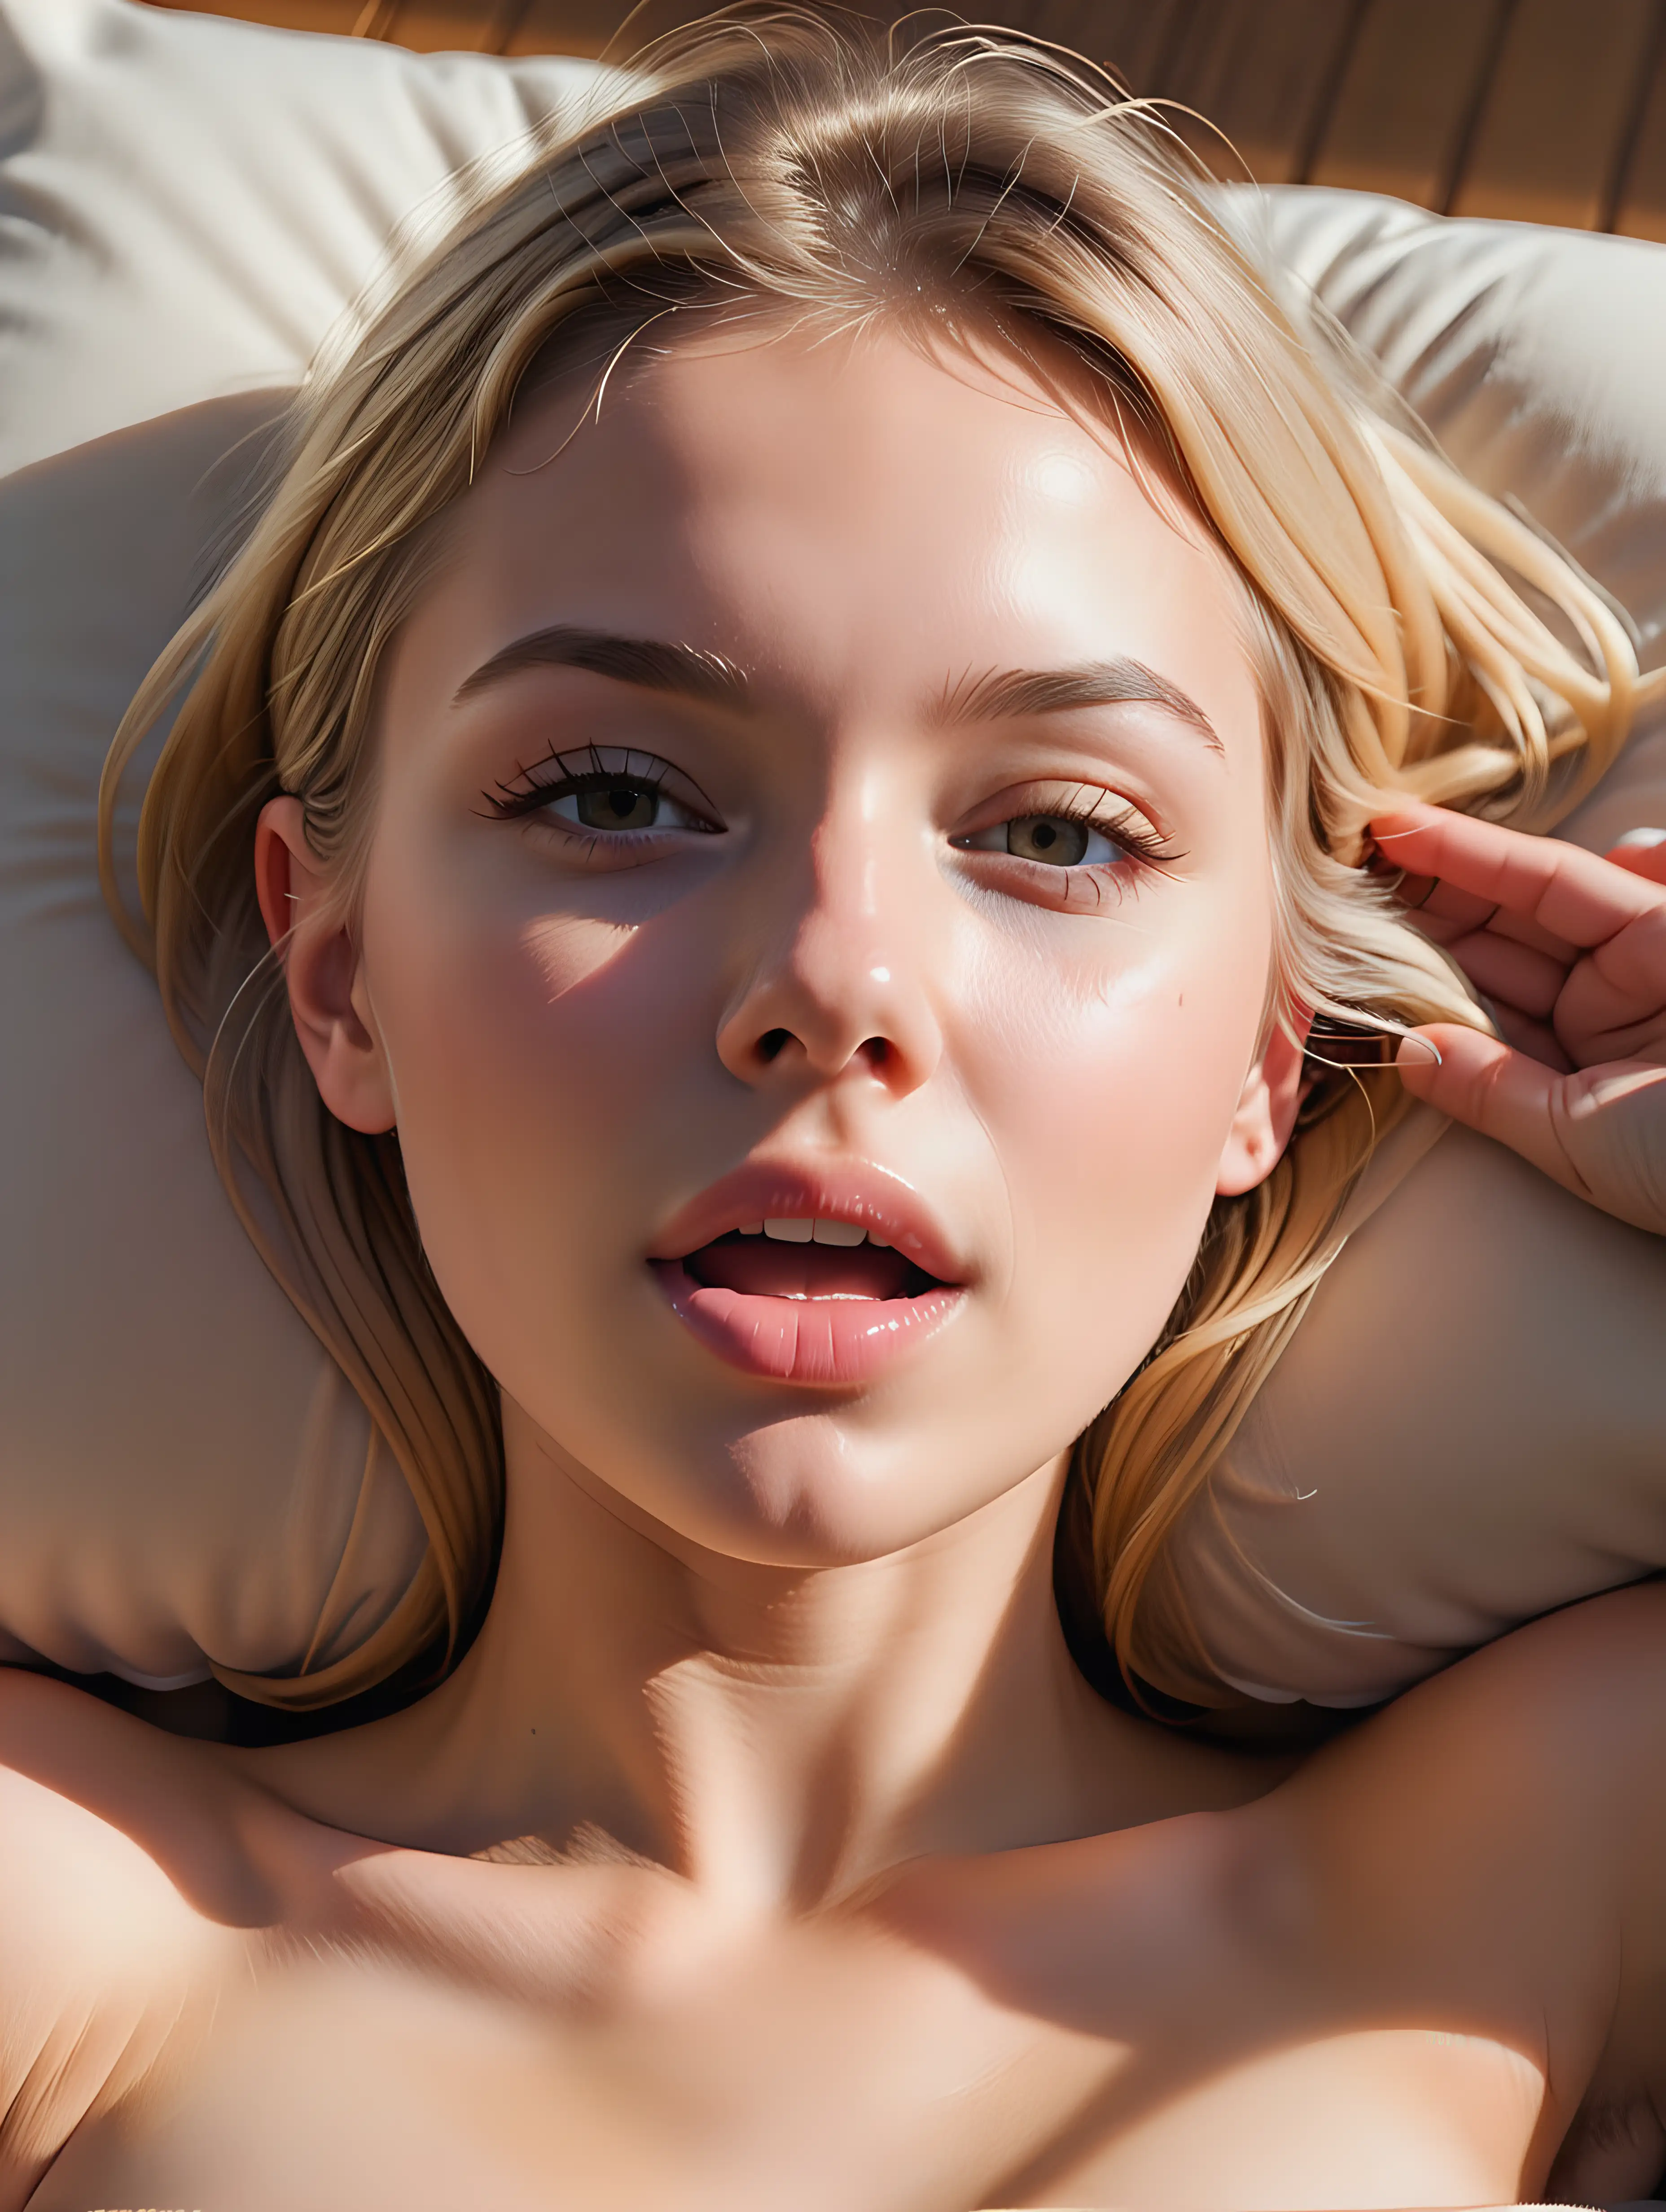 Young Woman Bathing in Sunlight Sensual CloseUp Portrait